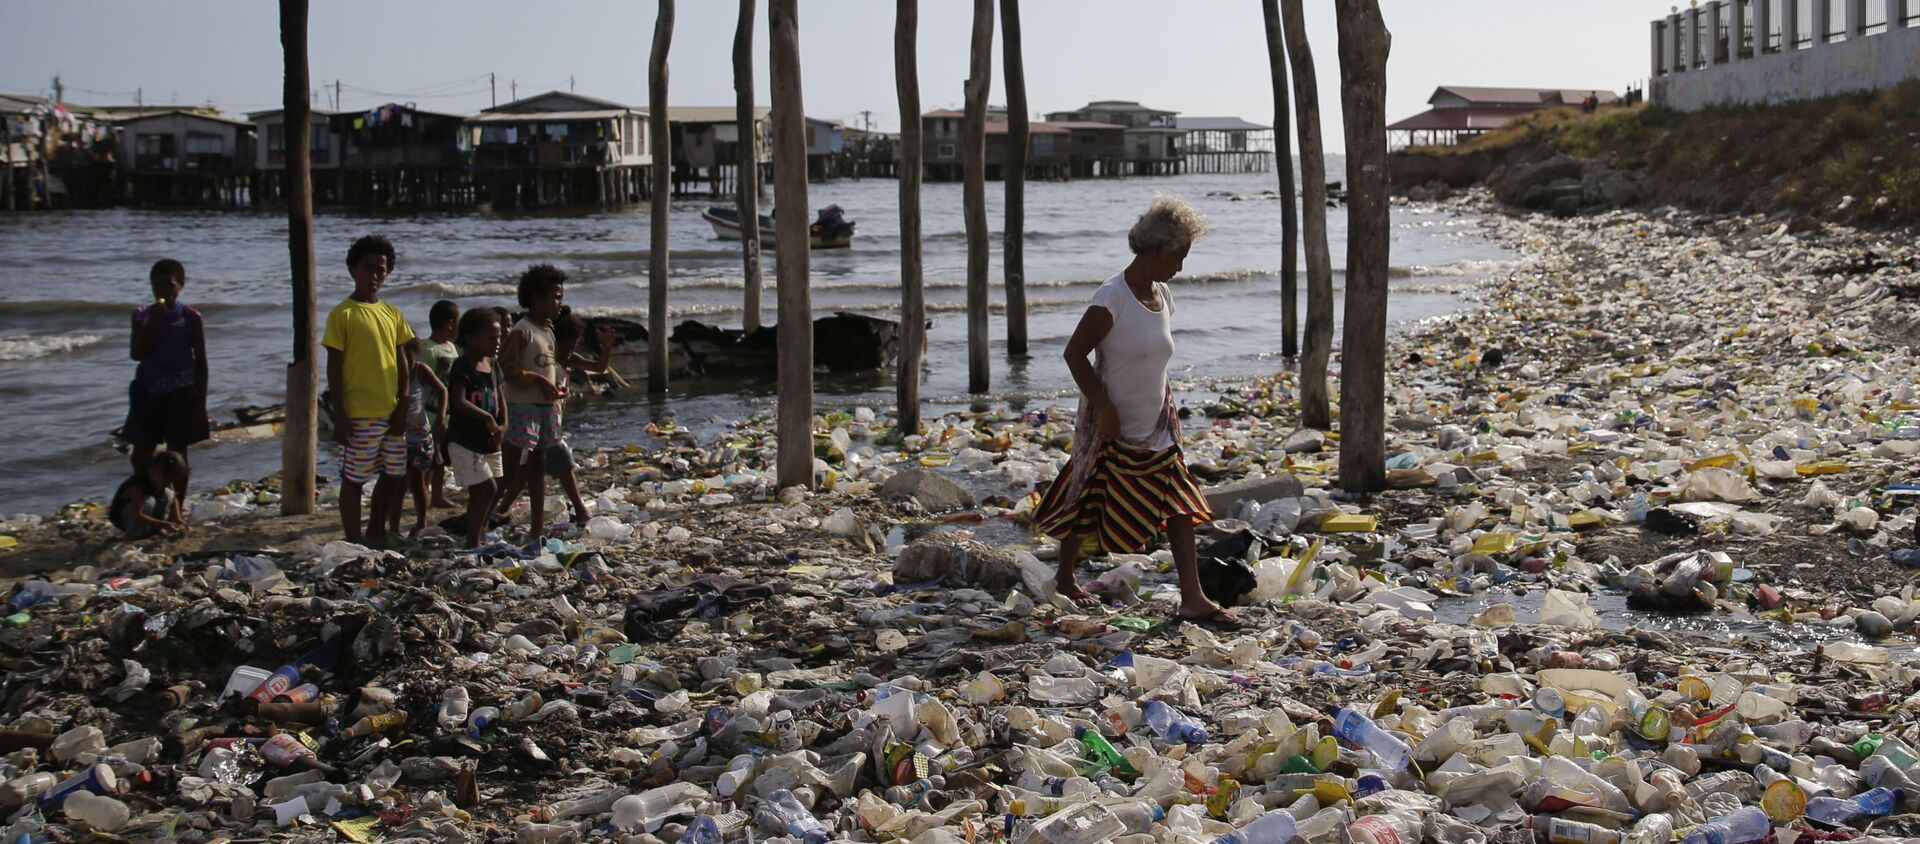 Замусоренный пляж в Порт-Морсби, столице Папуа - Новой Гвинеи - Sputnik International, 1920, 05.03.2021